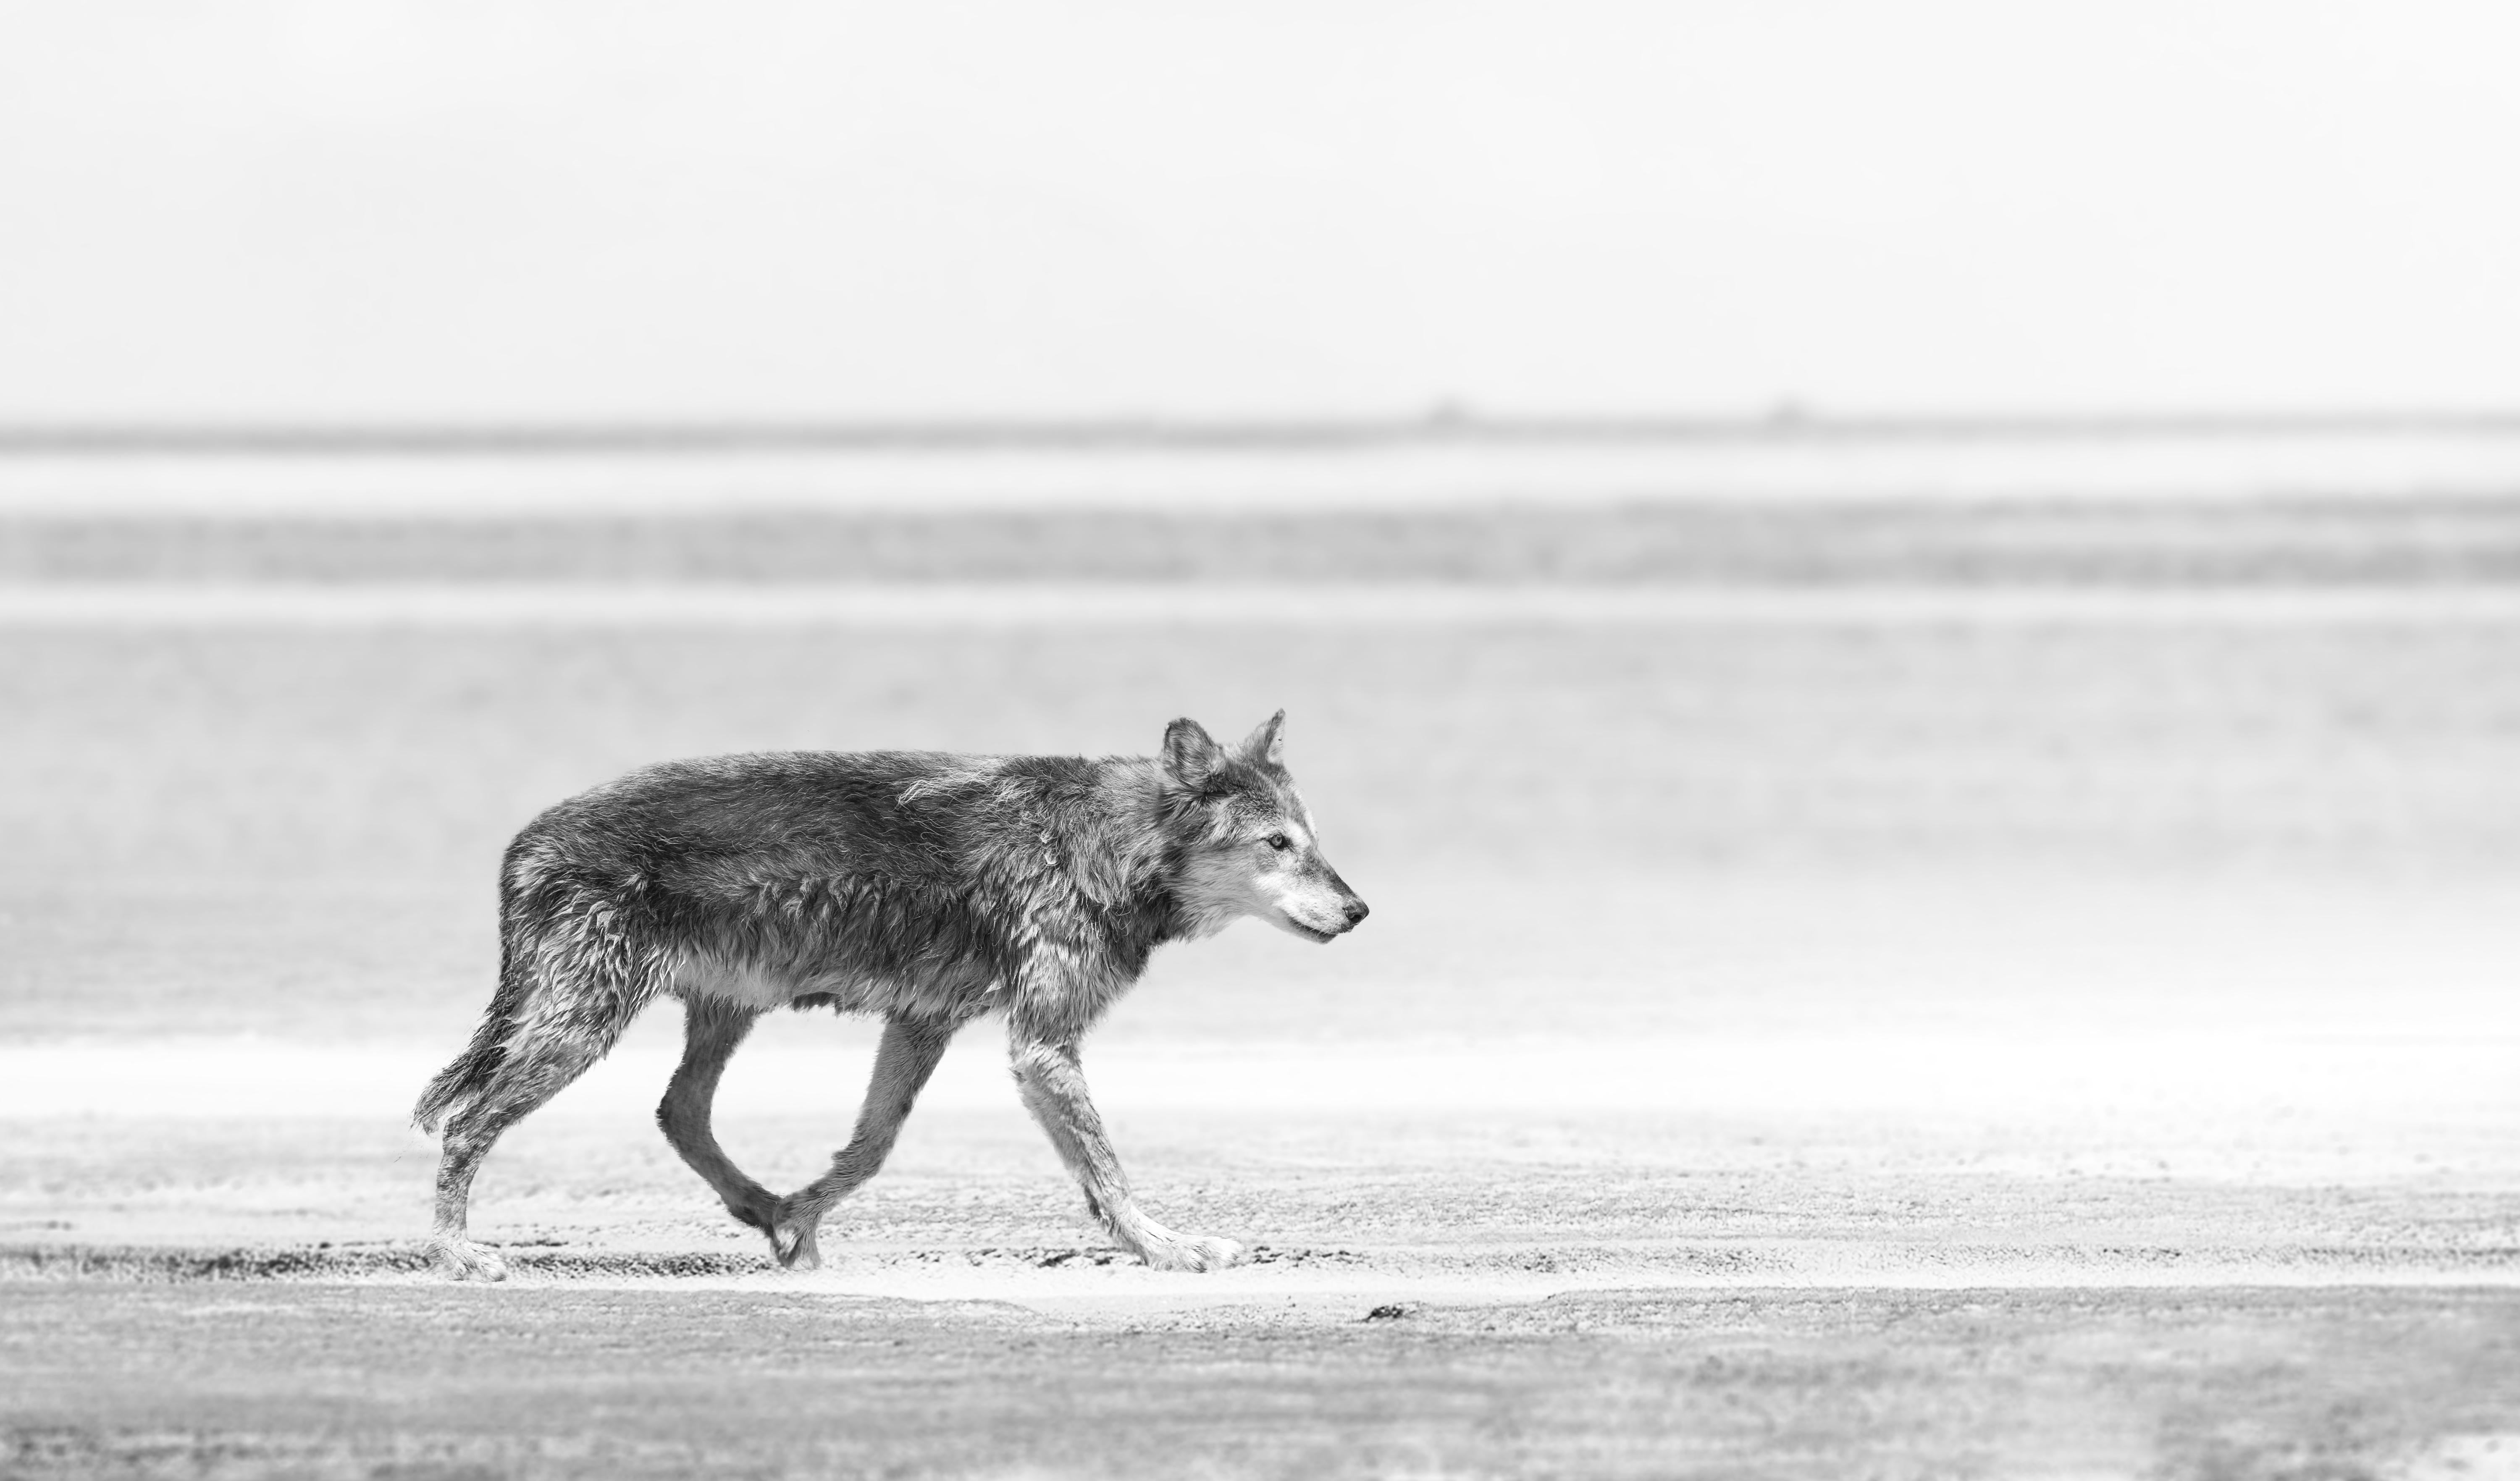 Dies ist eine zeitgenössische Schwarz-Weiß-Fotografie eines Küstenwolfs.
Gedruckt auf Archivpapier, das nur mit Archivtinte bedruckt ist. 
Auflage von 50 Stück
Gesungen und nummeriert 
Einrahmung verfügbar. Erkundigen Sie sich nach den Preisen. 

